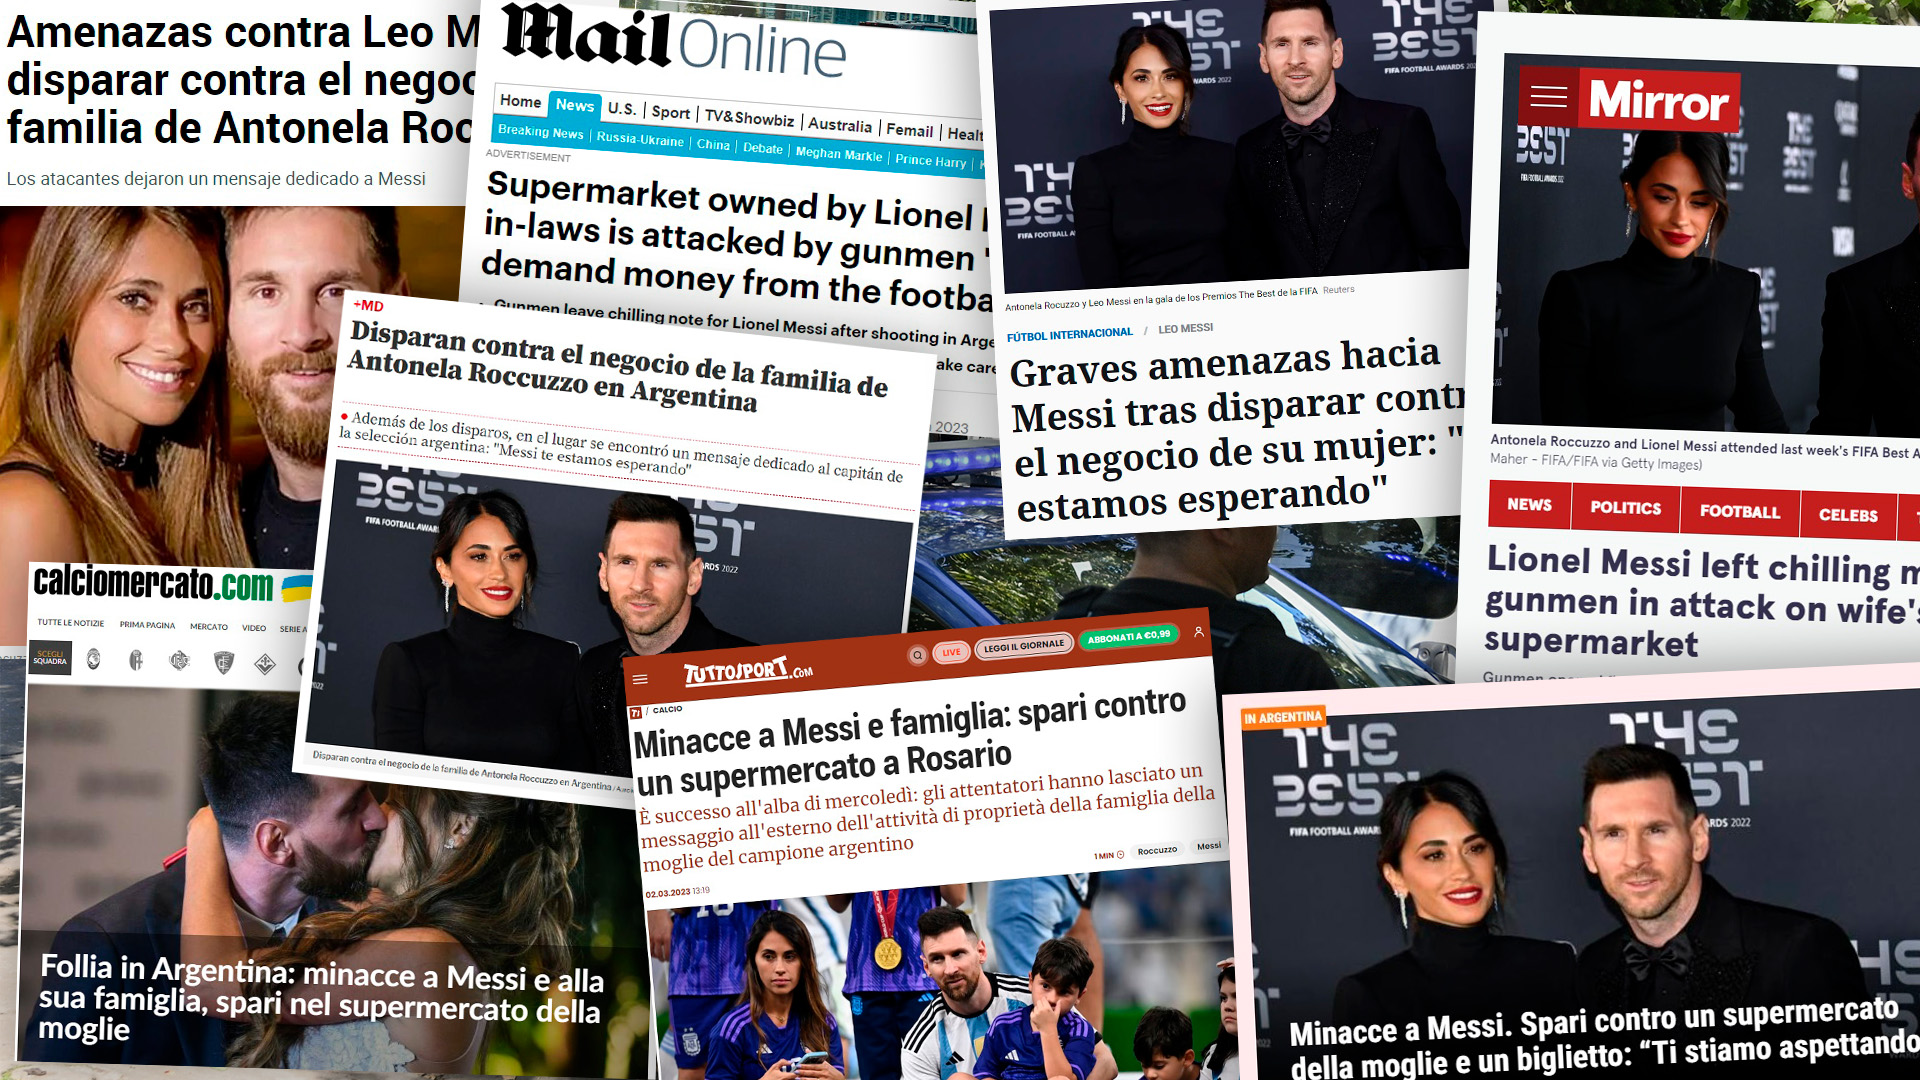 Así reflejó la prensa internacional el mensaje mafioso Lionel Messi y la y la balacera en Rosario frente a un local de la familia de Antonela Roccuzzo